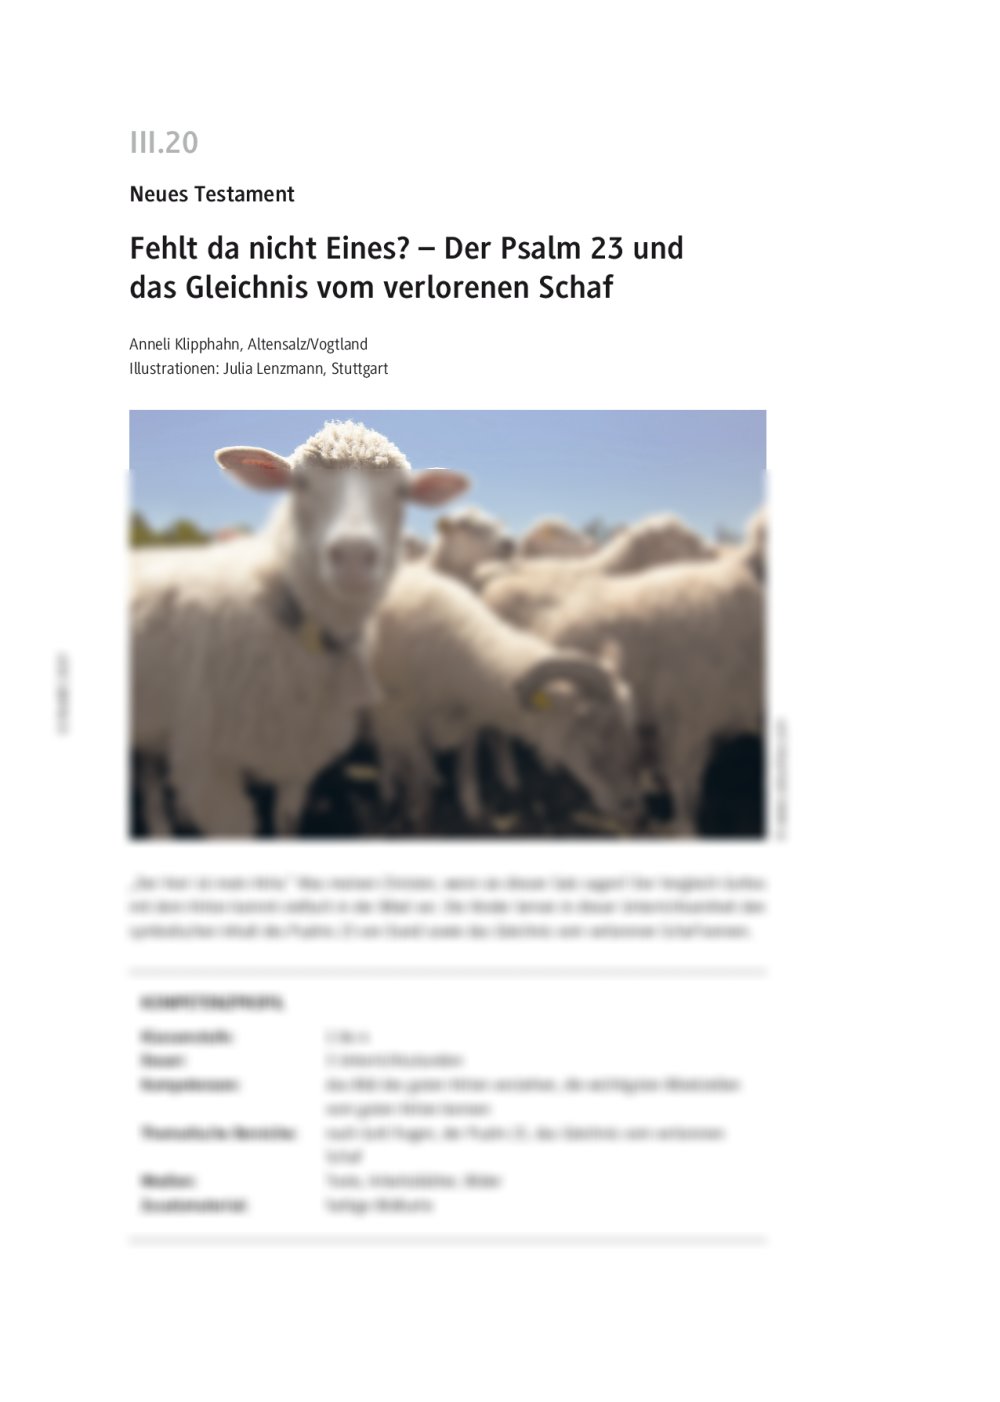 Der Psalm 23 und das Gleichnis vom verlorenen Schaf - Seite 1